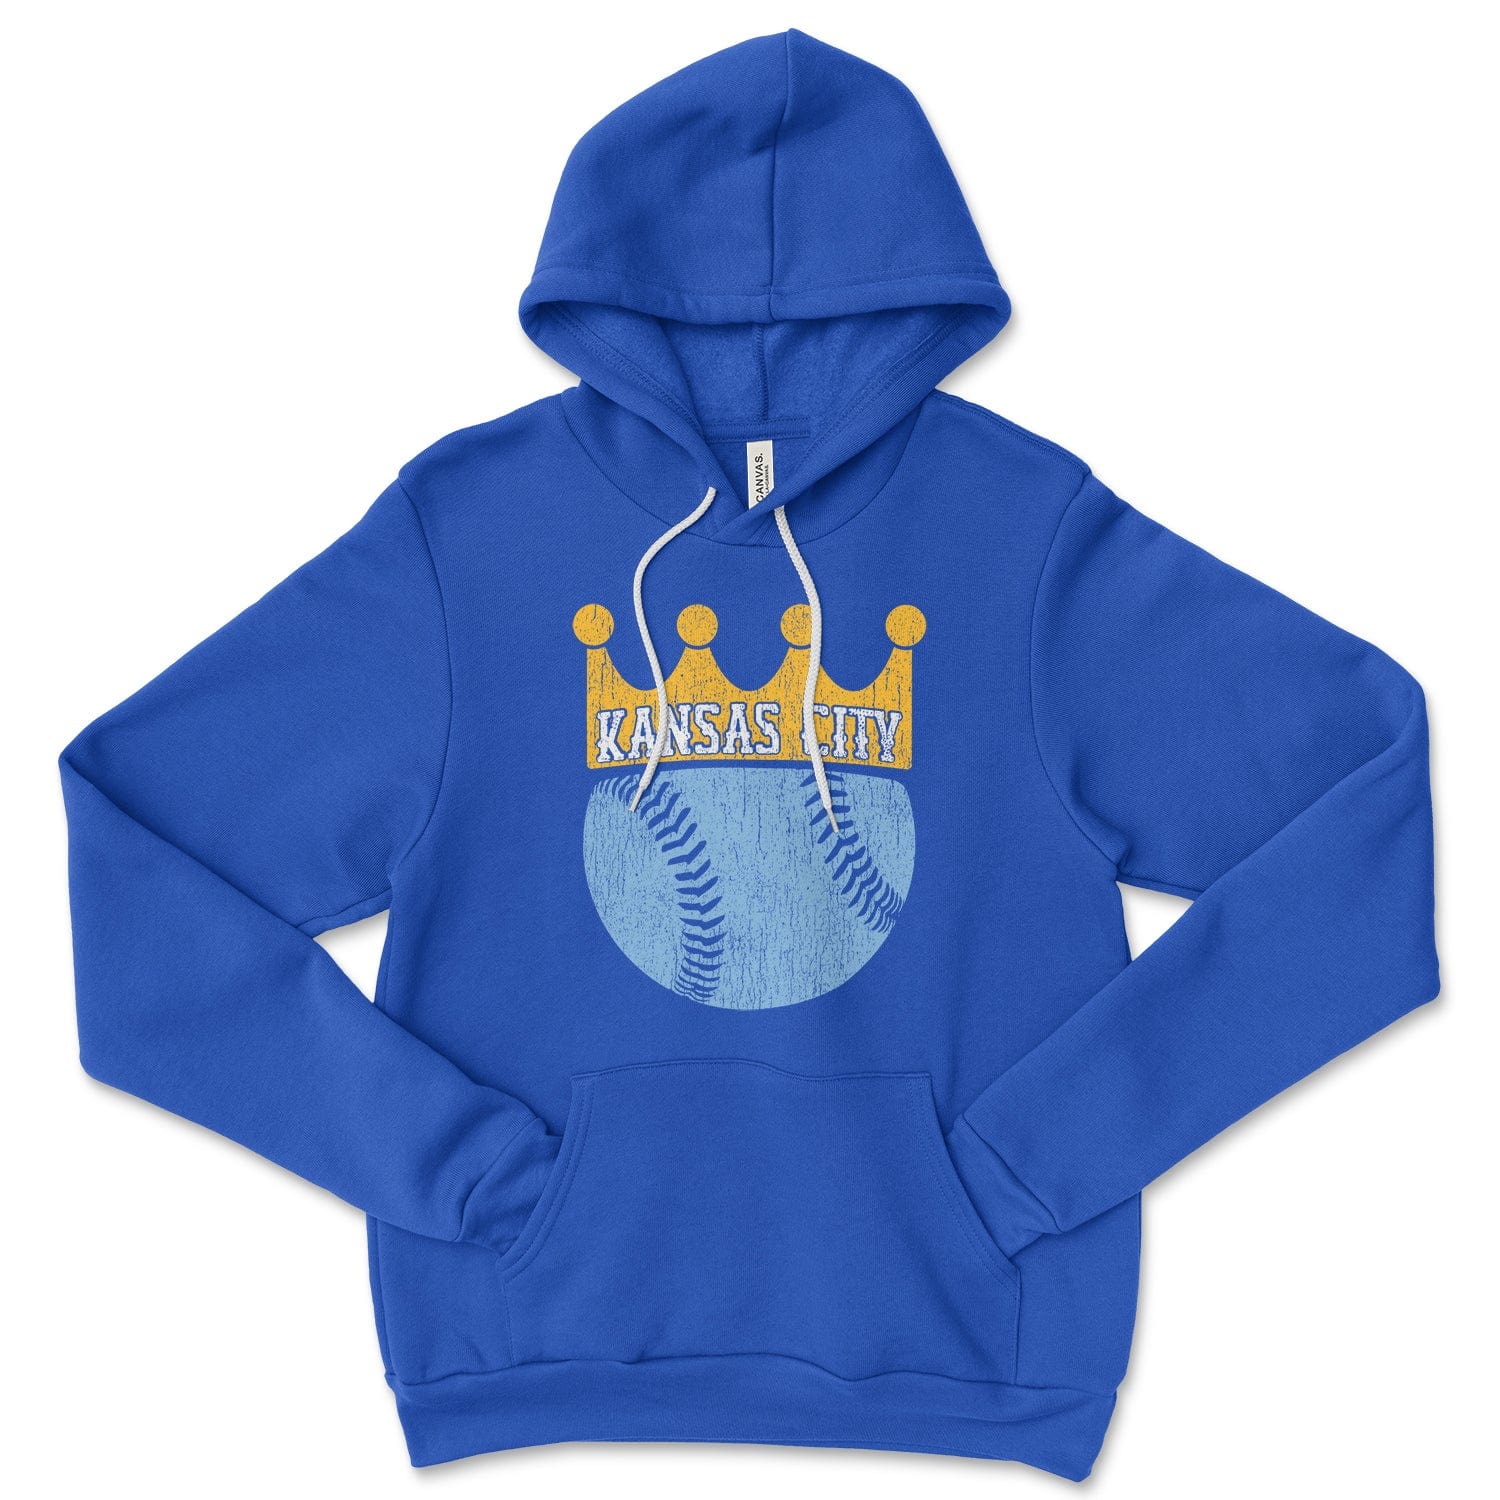 kc royals hoodie